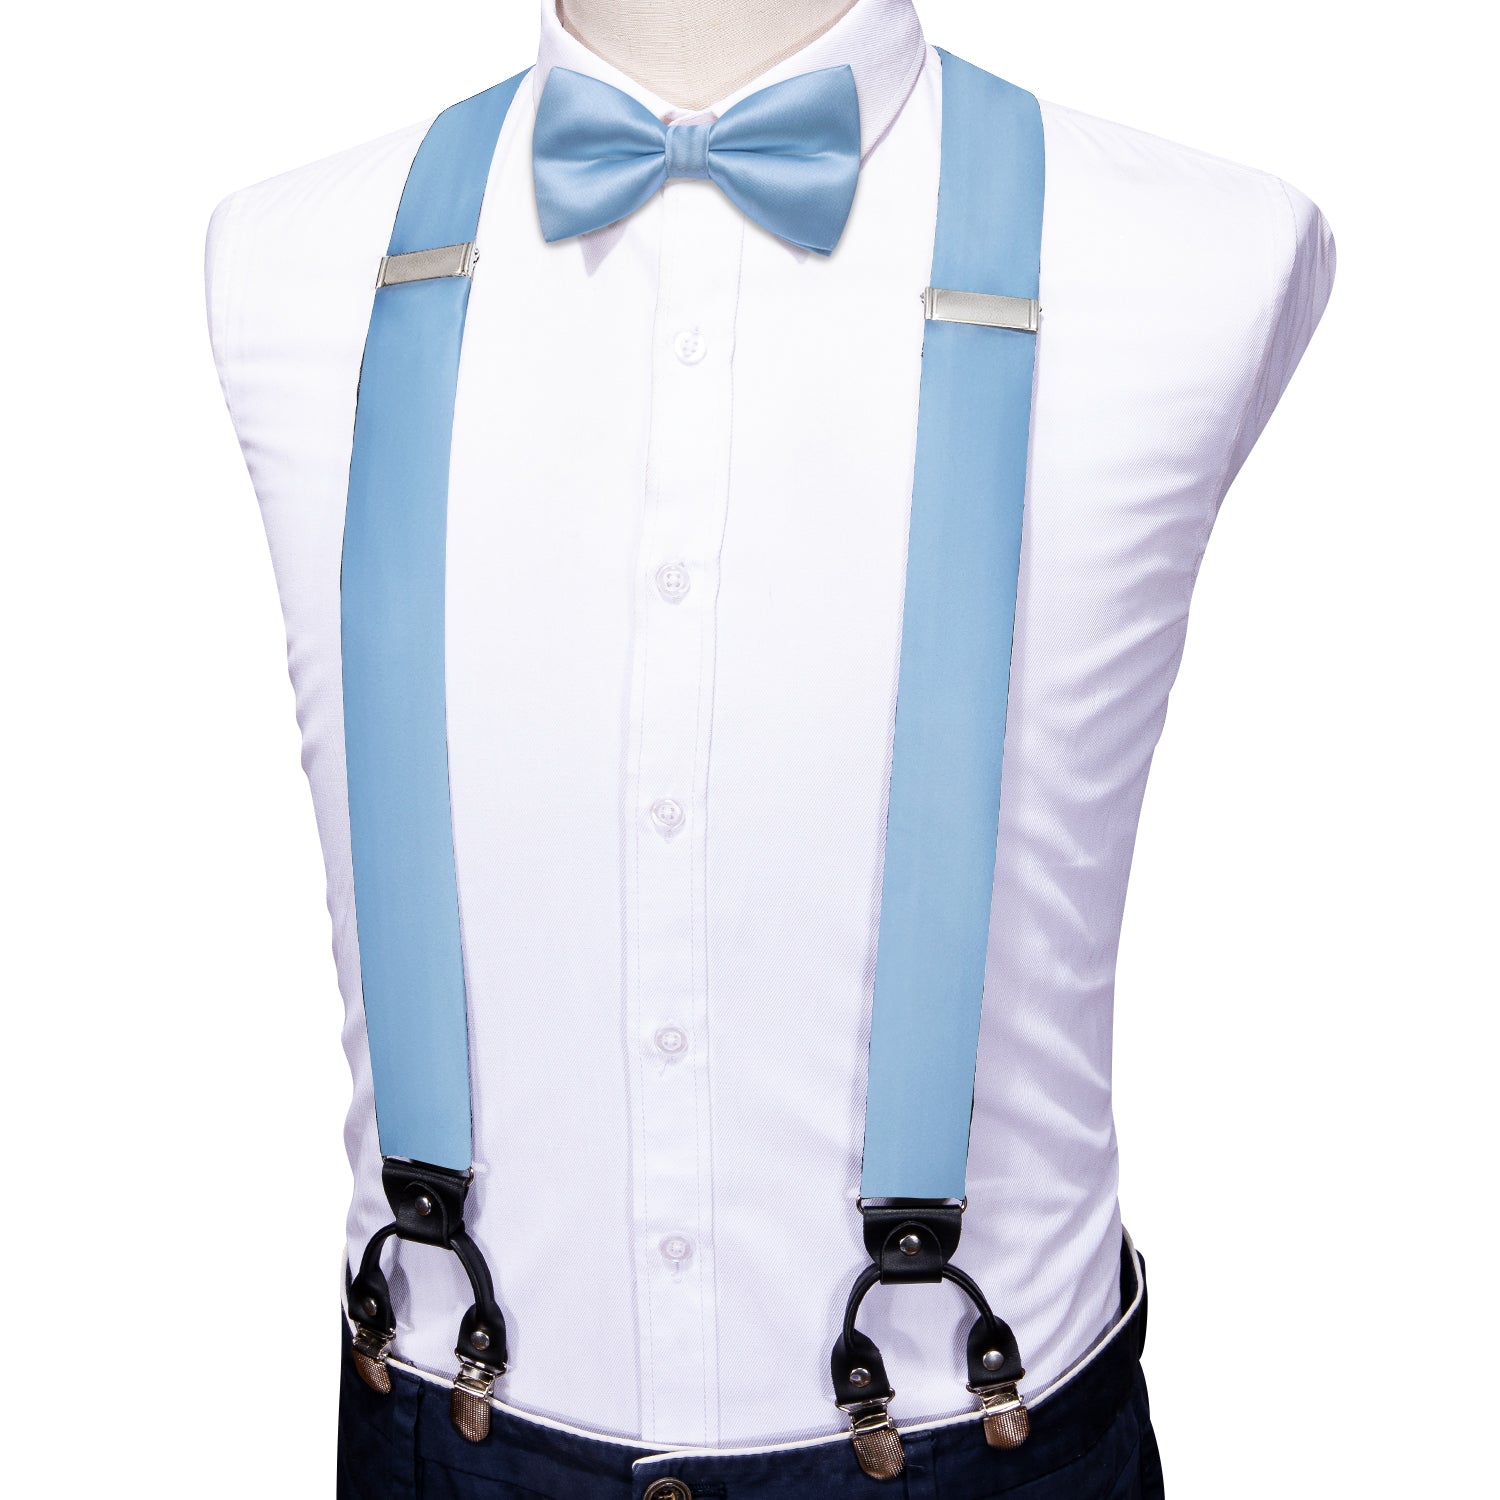 Sea Foam Solid Y Back Adjustable Bow Tie Suspenders Set